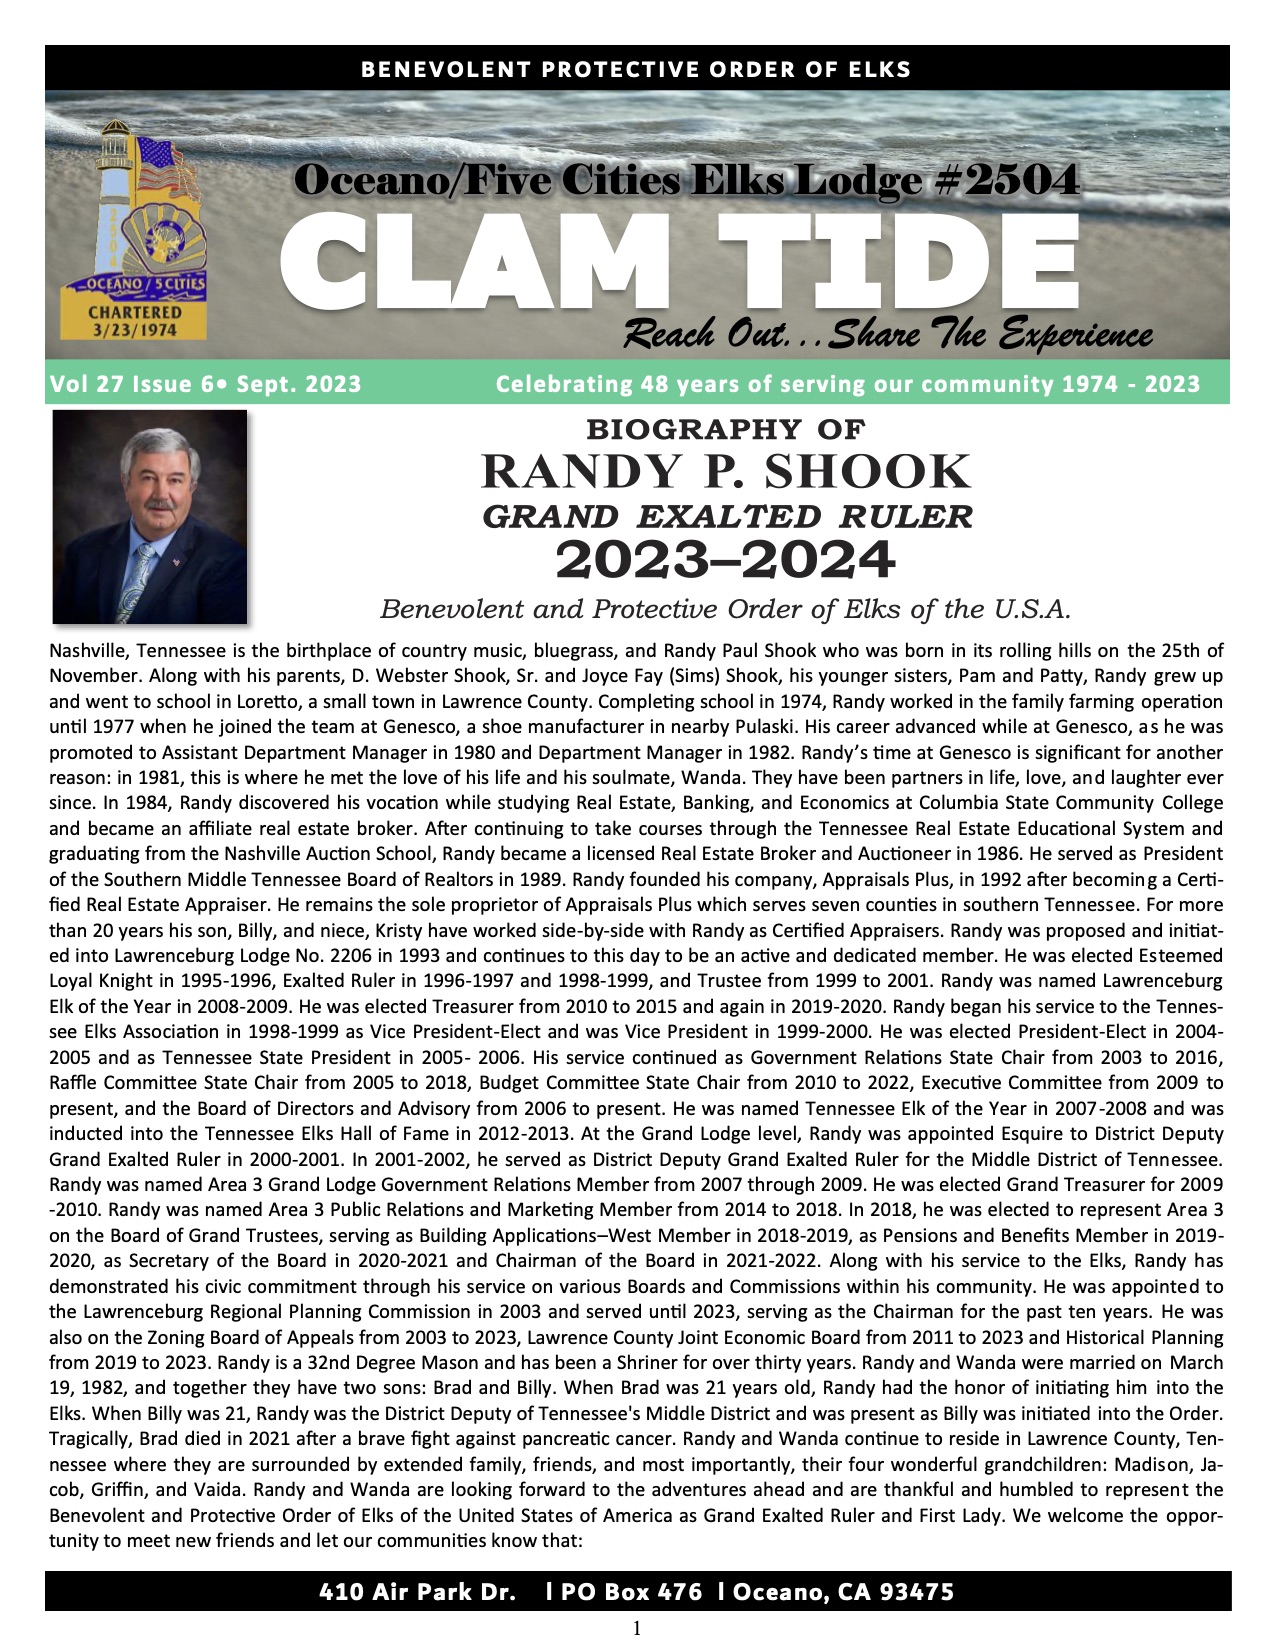 CLAM TIDE - September 2023